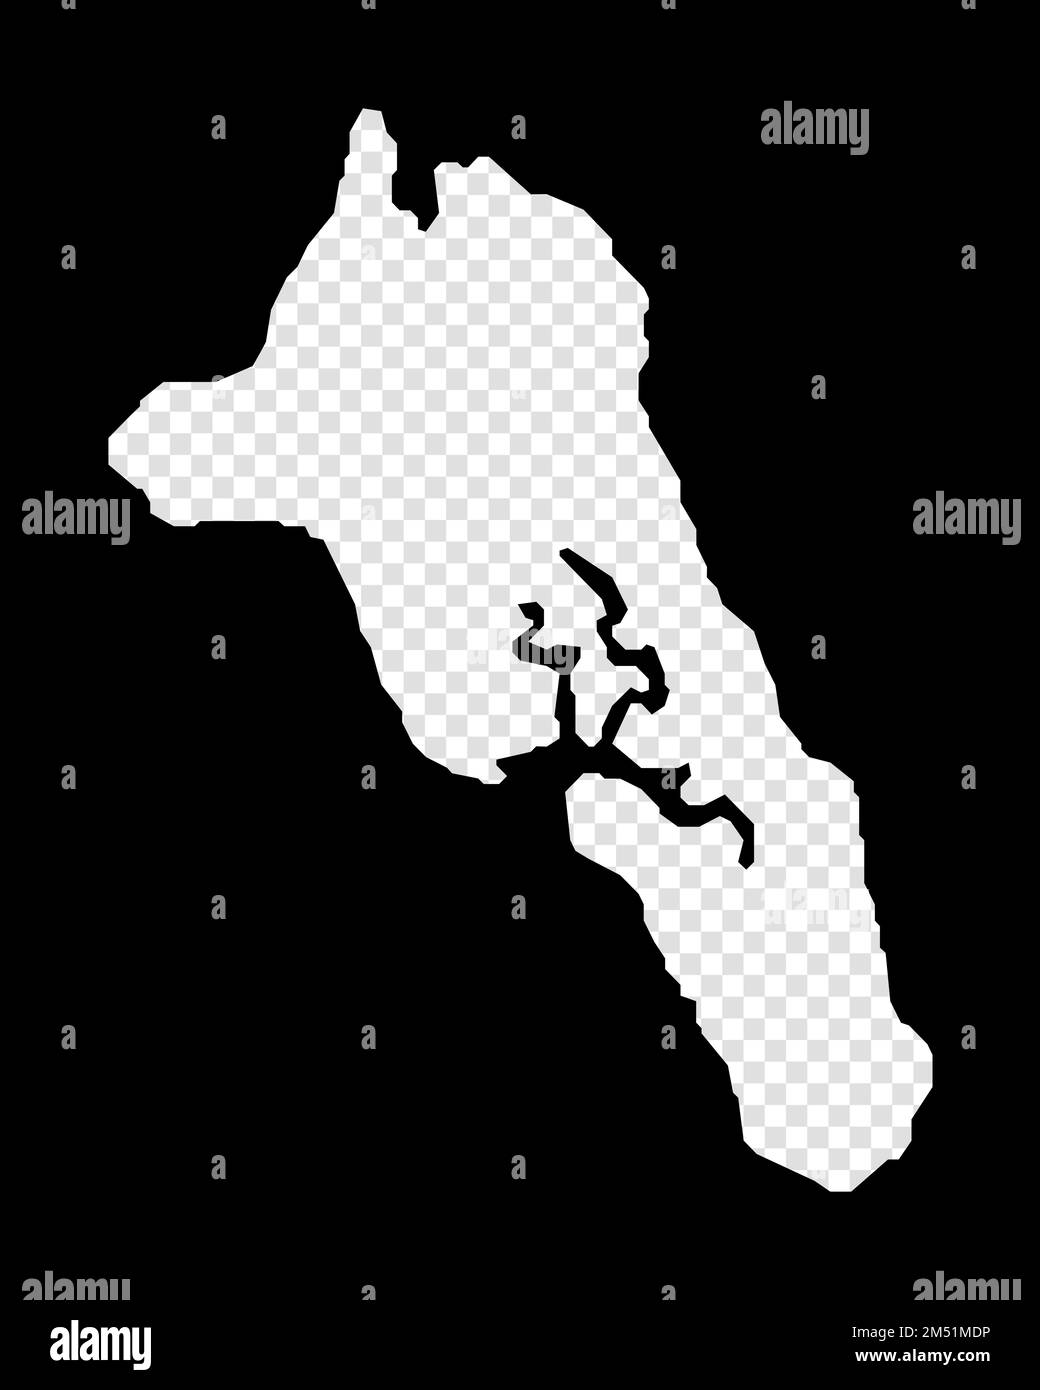 Mappa stencil di Havelock Island. Semplice e minimale mappa trasparente di Havelock Island. Rettangolo nero con forma tagliata dell'area. Affascinante vettore ill Illustrazione Vettoriale